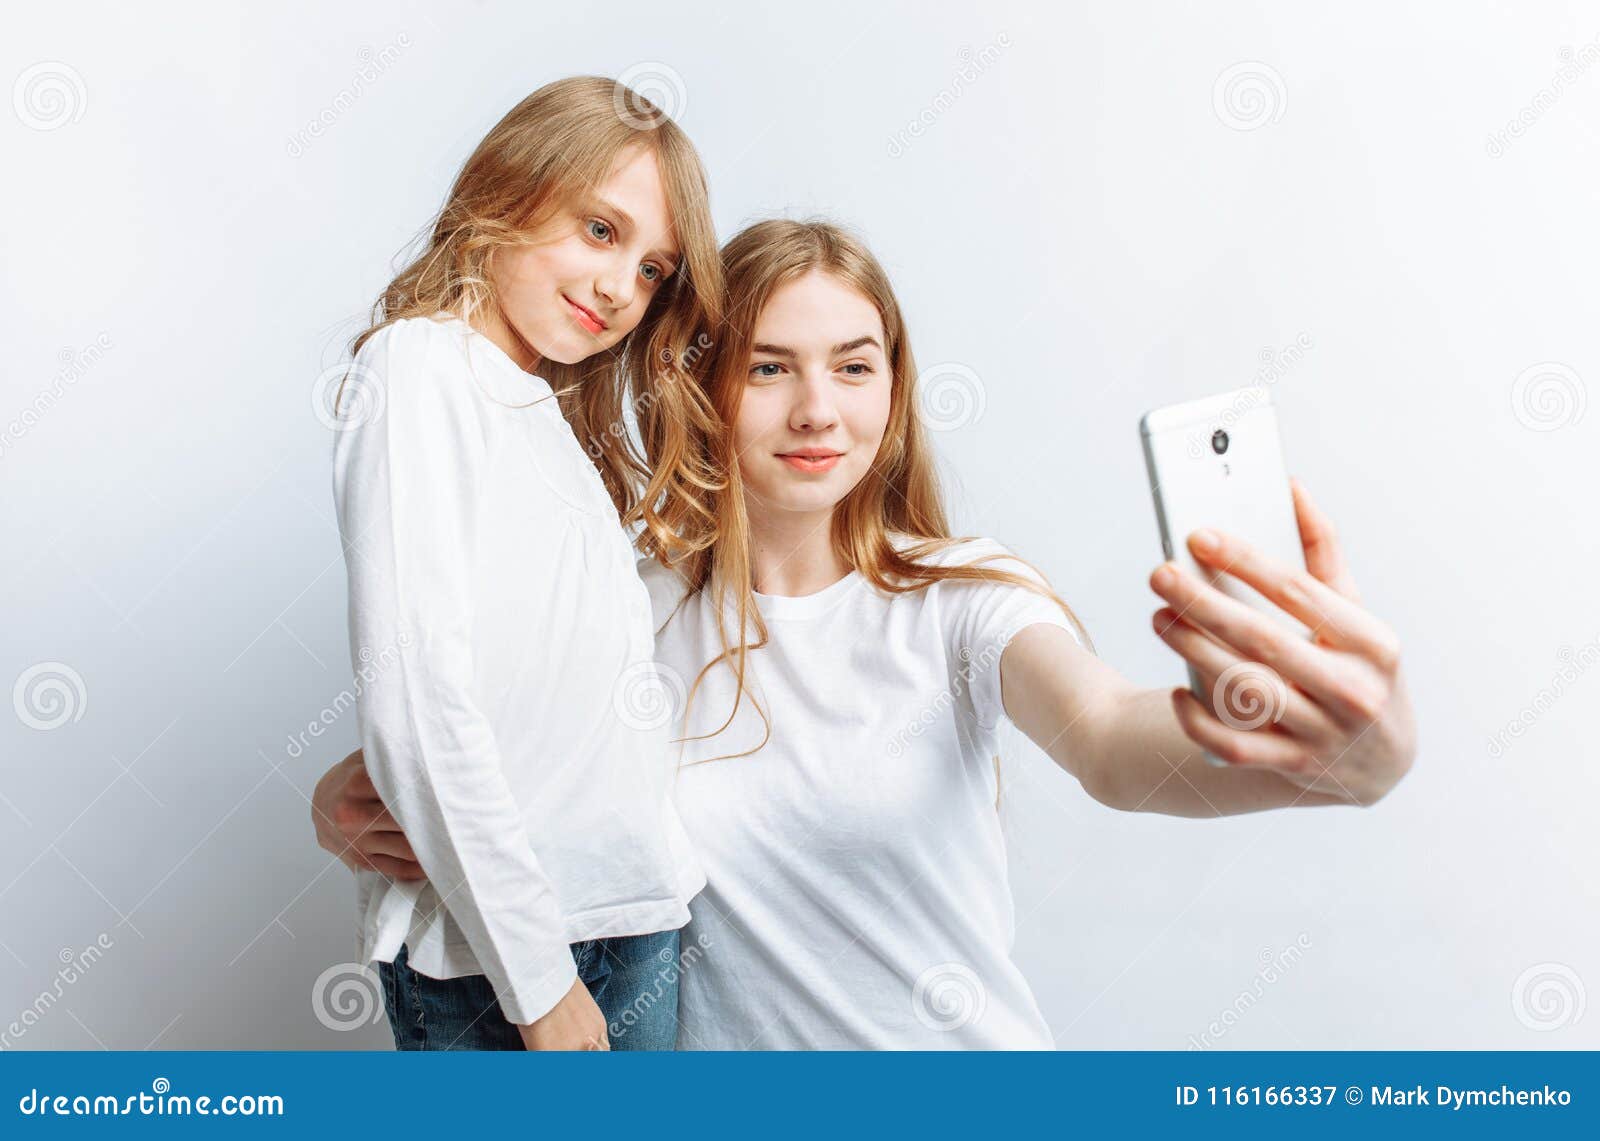 Mom or Older Sister Makes Selfie Little Girl, Happy Family, Photo ...